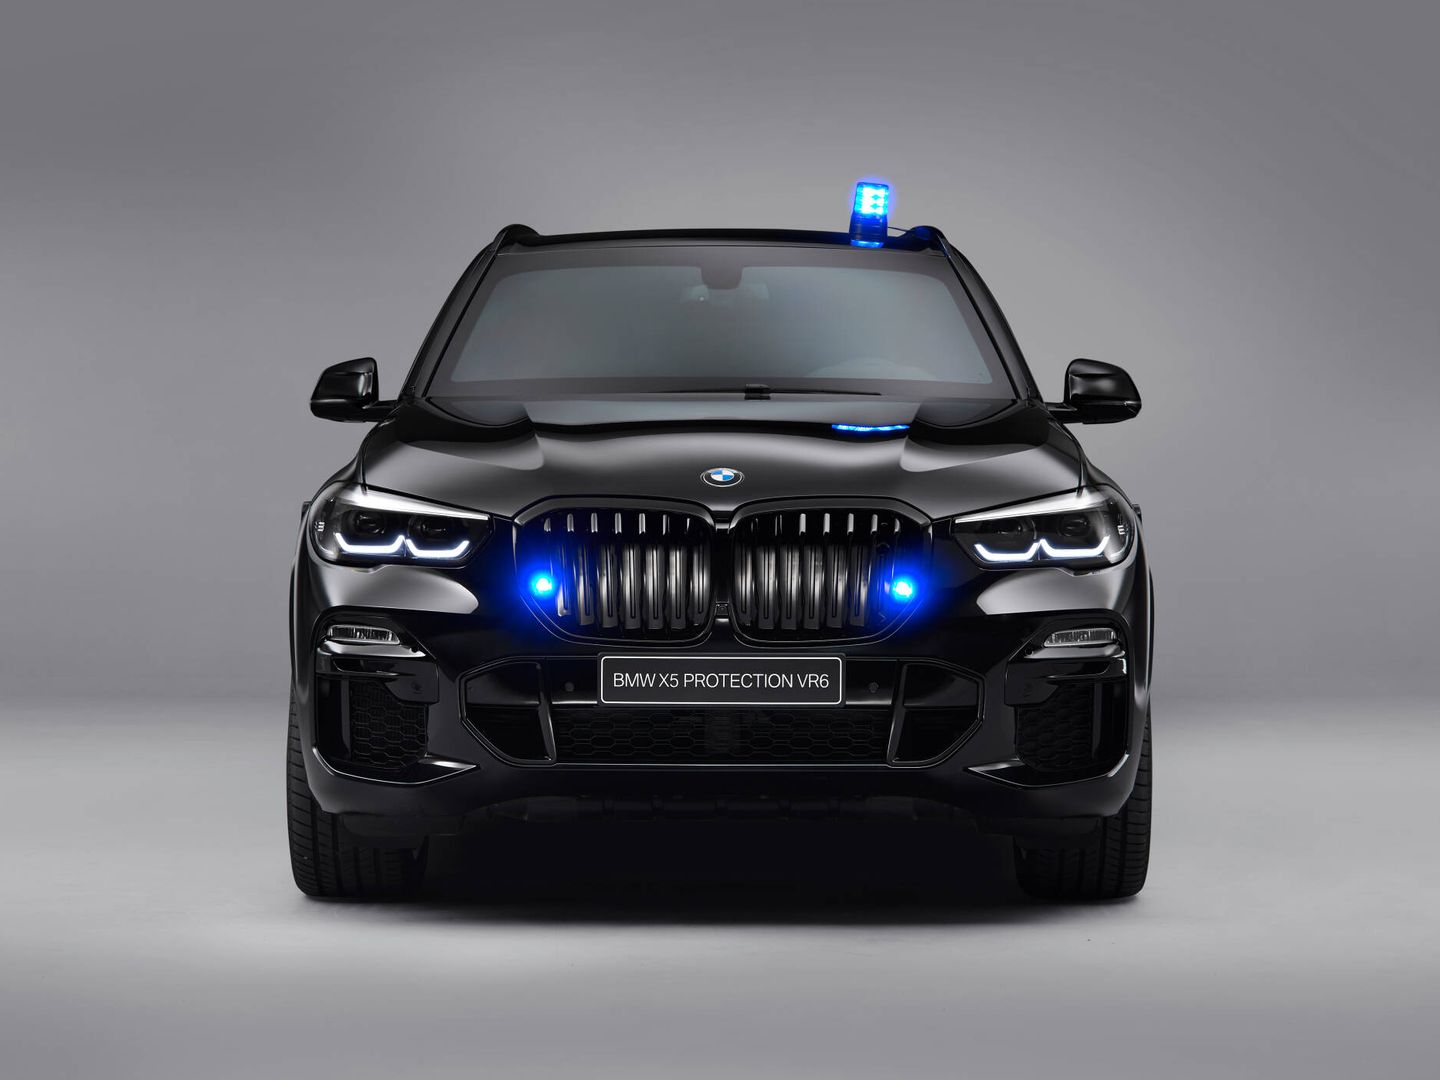 Hace tres años se lanzó el X5 Protection VR6, en el que se basa el modelo ahora presentado. (BMW)